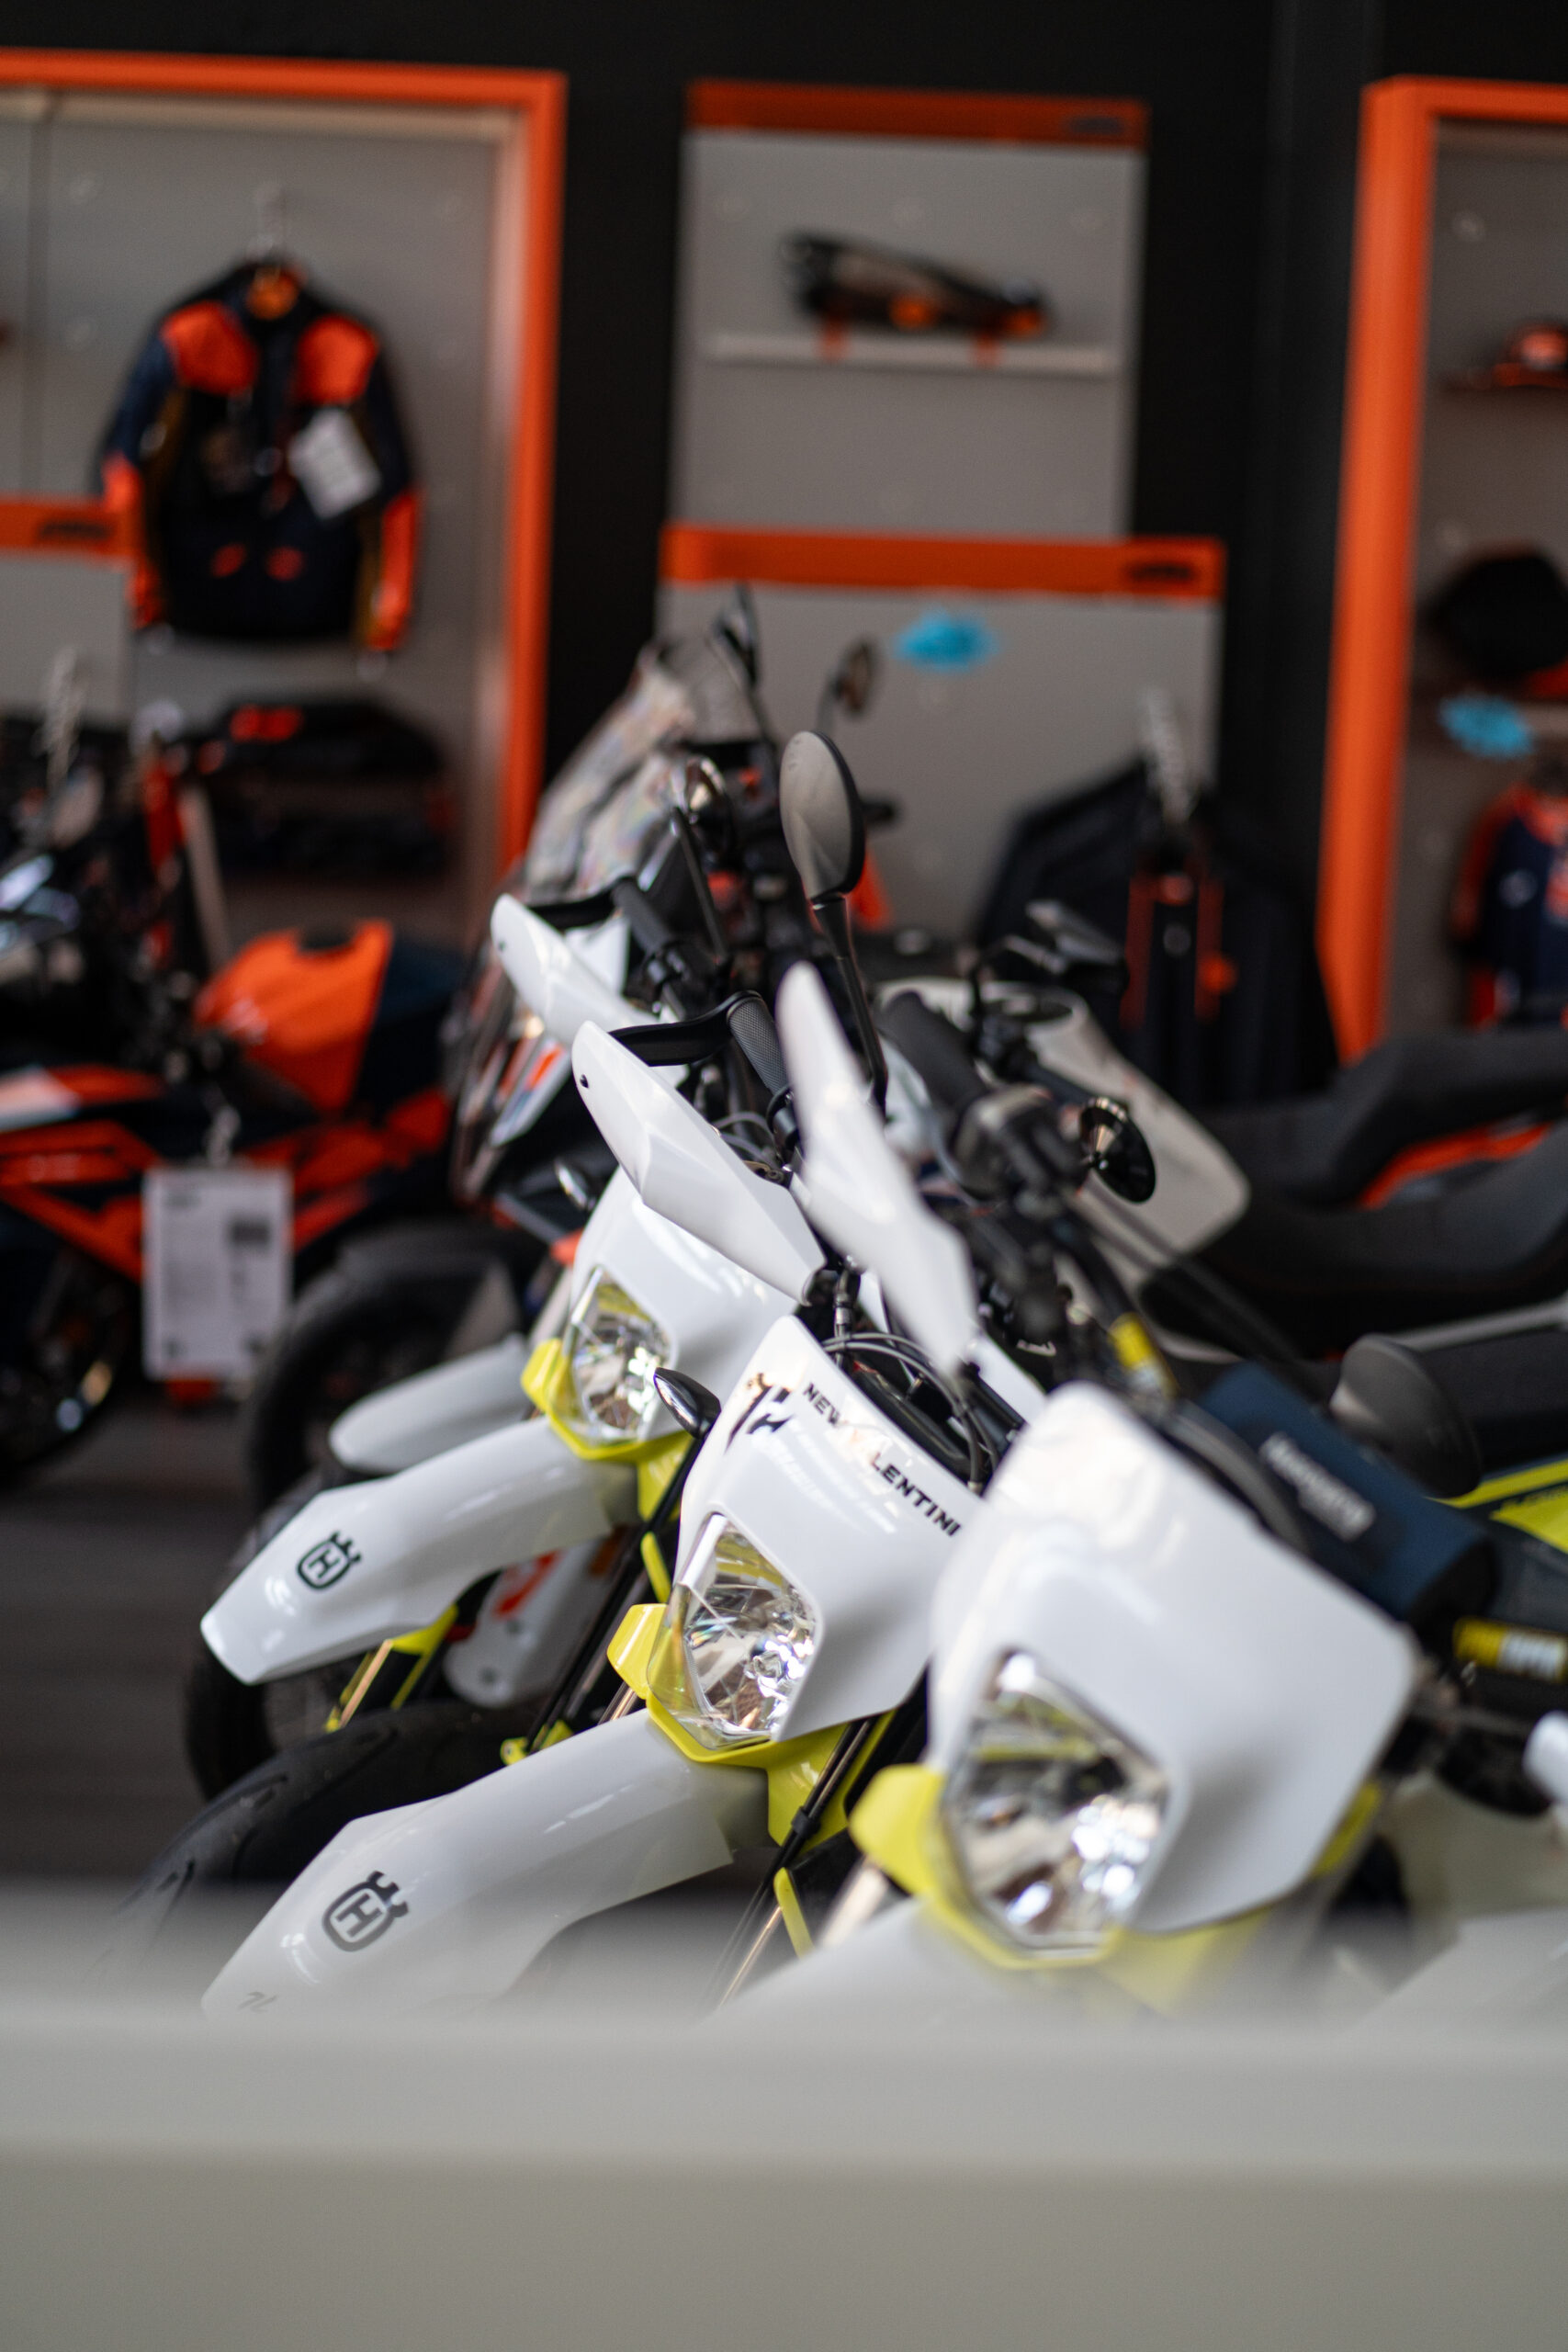 Esplora la nostra vasta selezione di moto KTM e Husqvarna a Alessandria. Nuove e usate, ogni veicolo è pronto per offrirti un'esperienza unica su strada e fuoristrada.